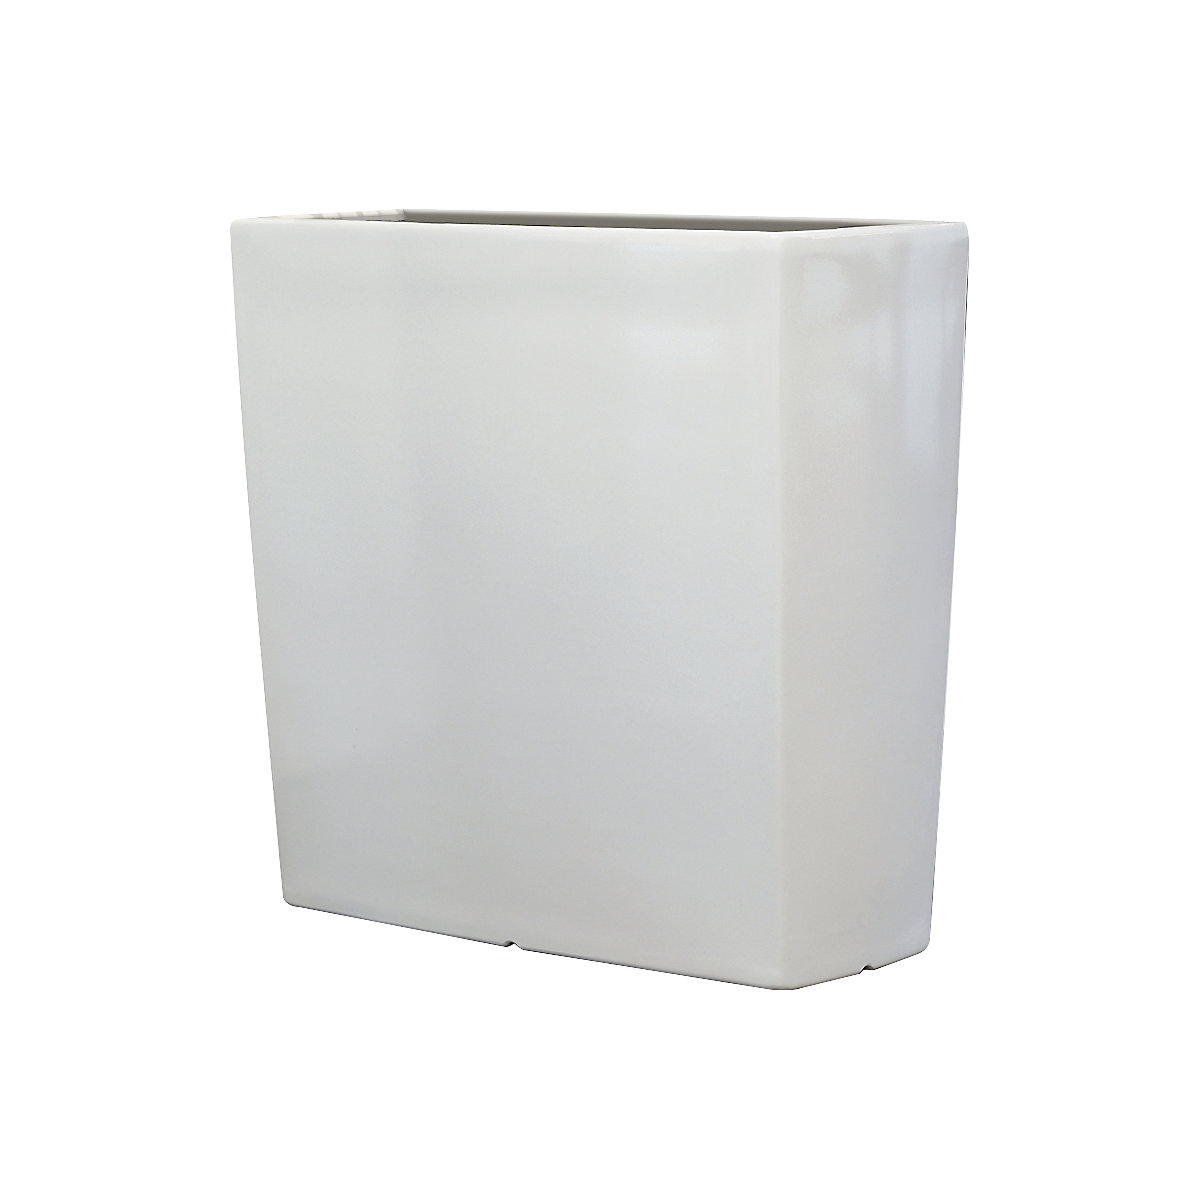 Plant container – DEGARDO, TREVIA 900K, HxWxD 900 x 900 x 390 mm, white-4